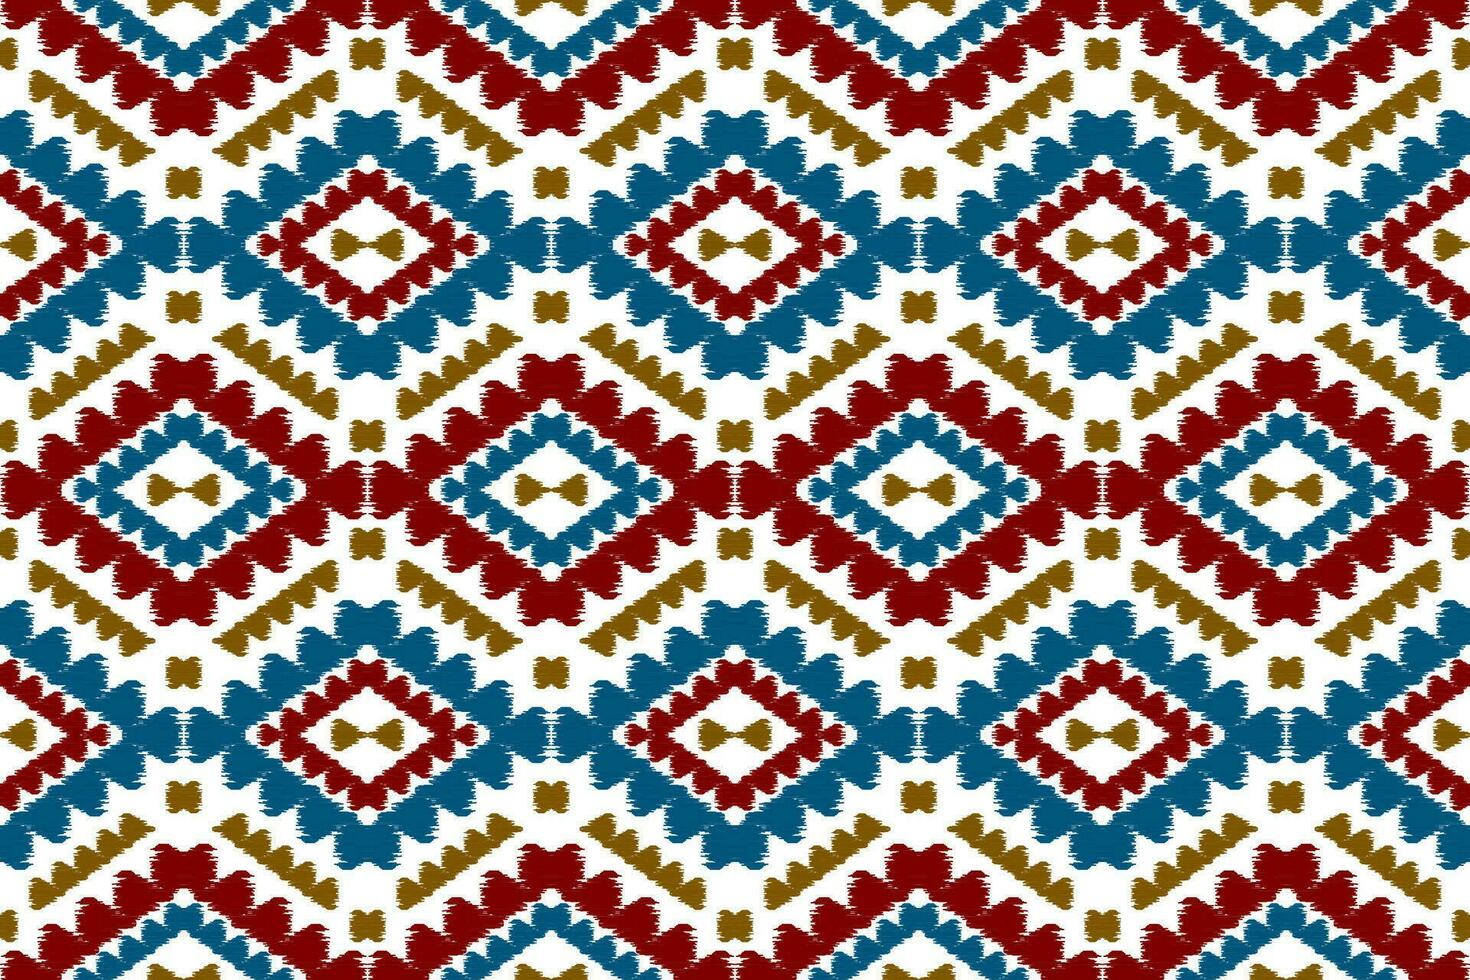 kleding stof ikat patroon kunst. meetkundig etnisch naadloos patroon traditioneel. Amerikaans, Mexicaans stijl. vector